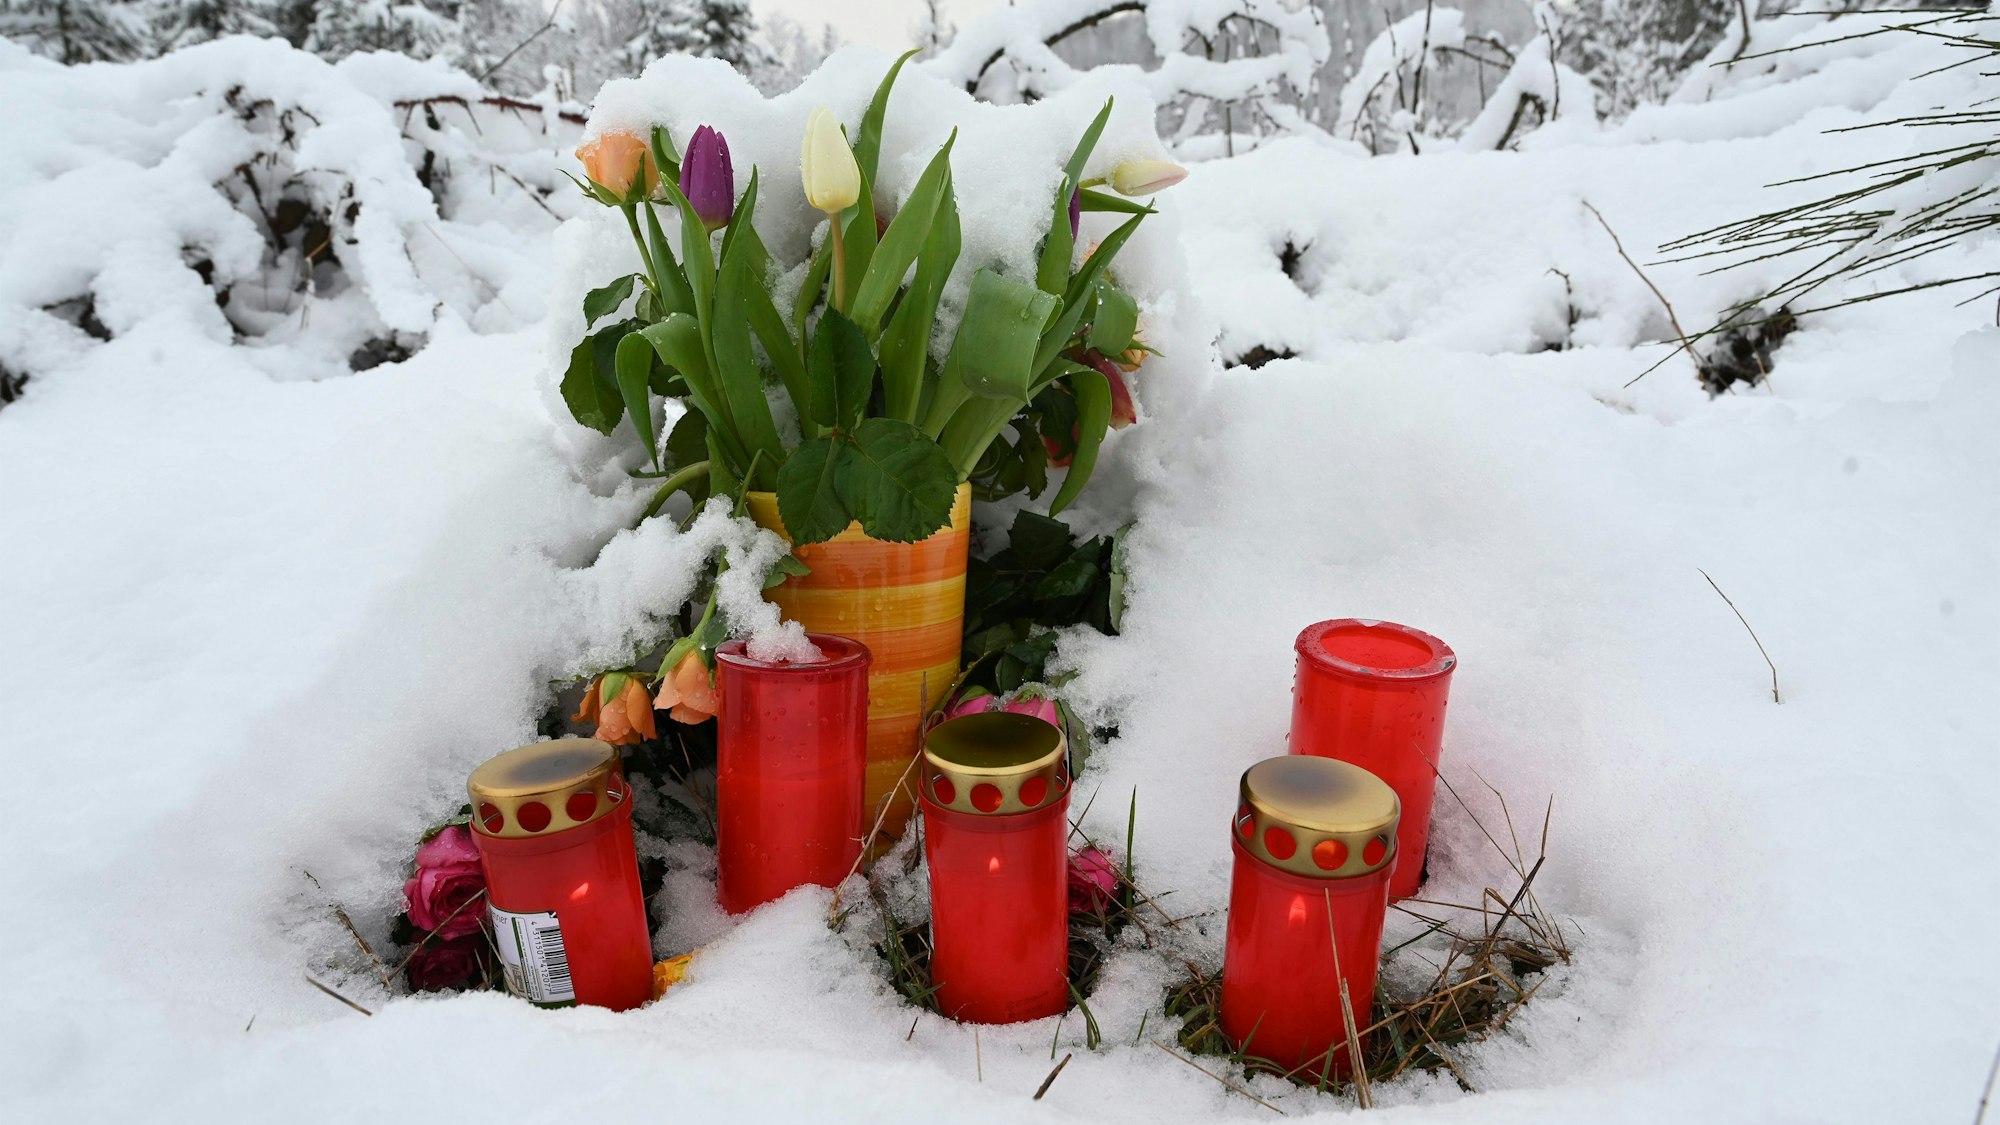 Am Fundort des ermordeten zwölfjährigen Mädchens Luise stehen Blumen und Kerzen. Frisch gefallener Schnee bedeckt den Boden.